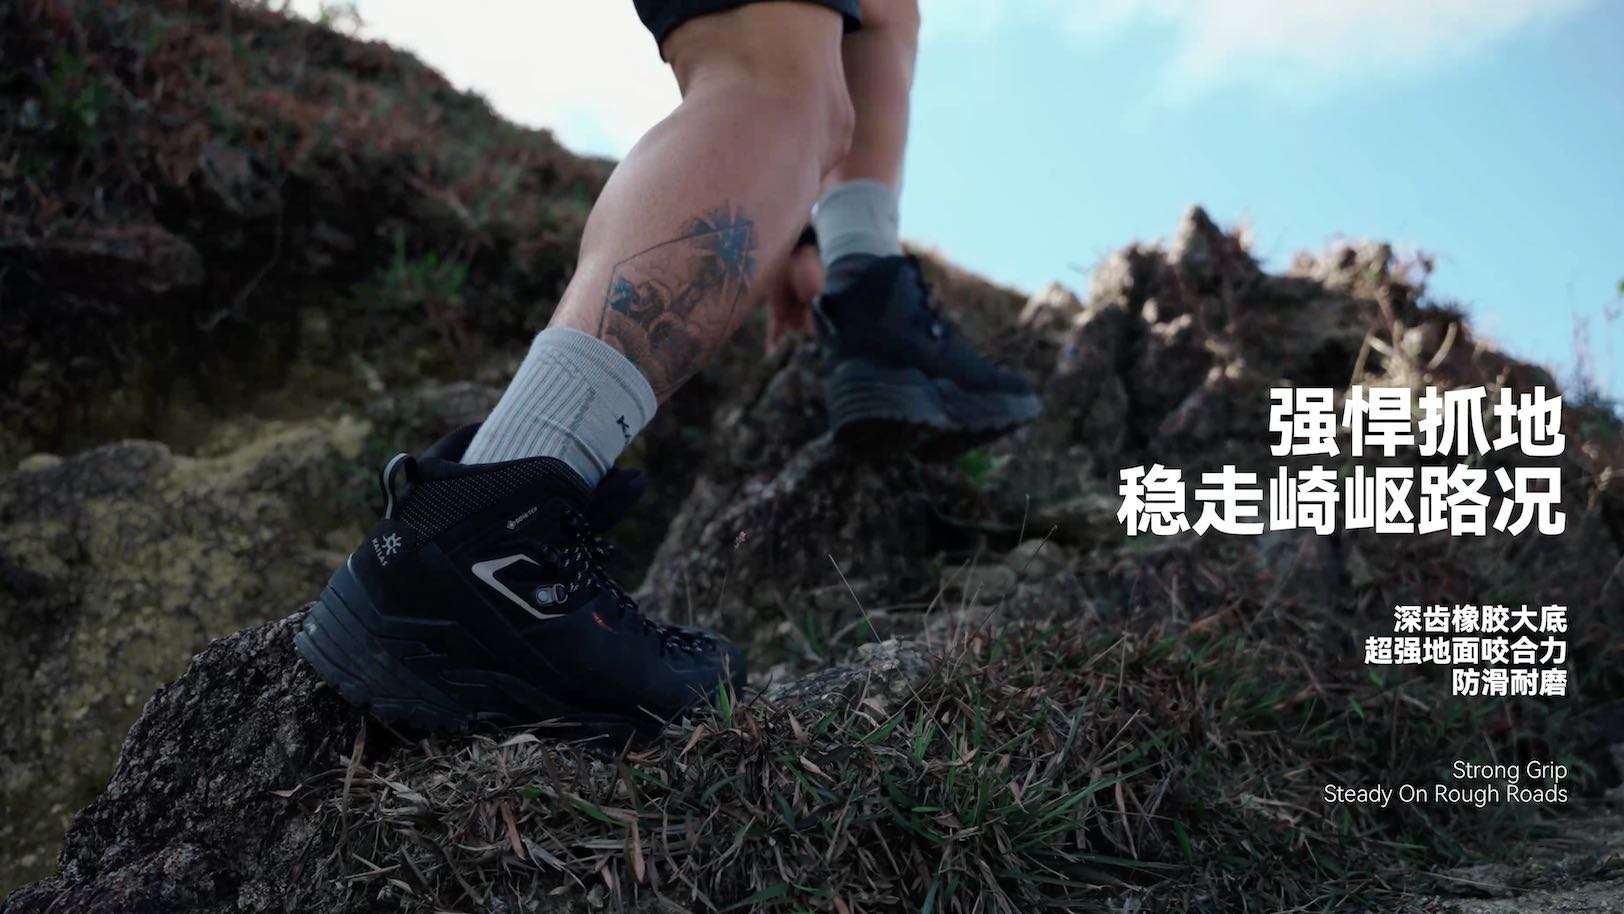 5000Mt.2 GTX防水登山徒步鞋 | 户外运动短片案例